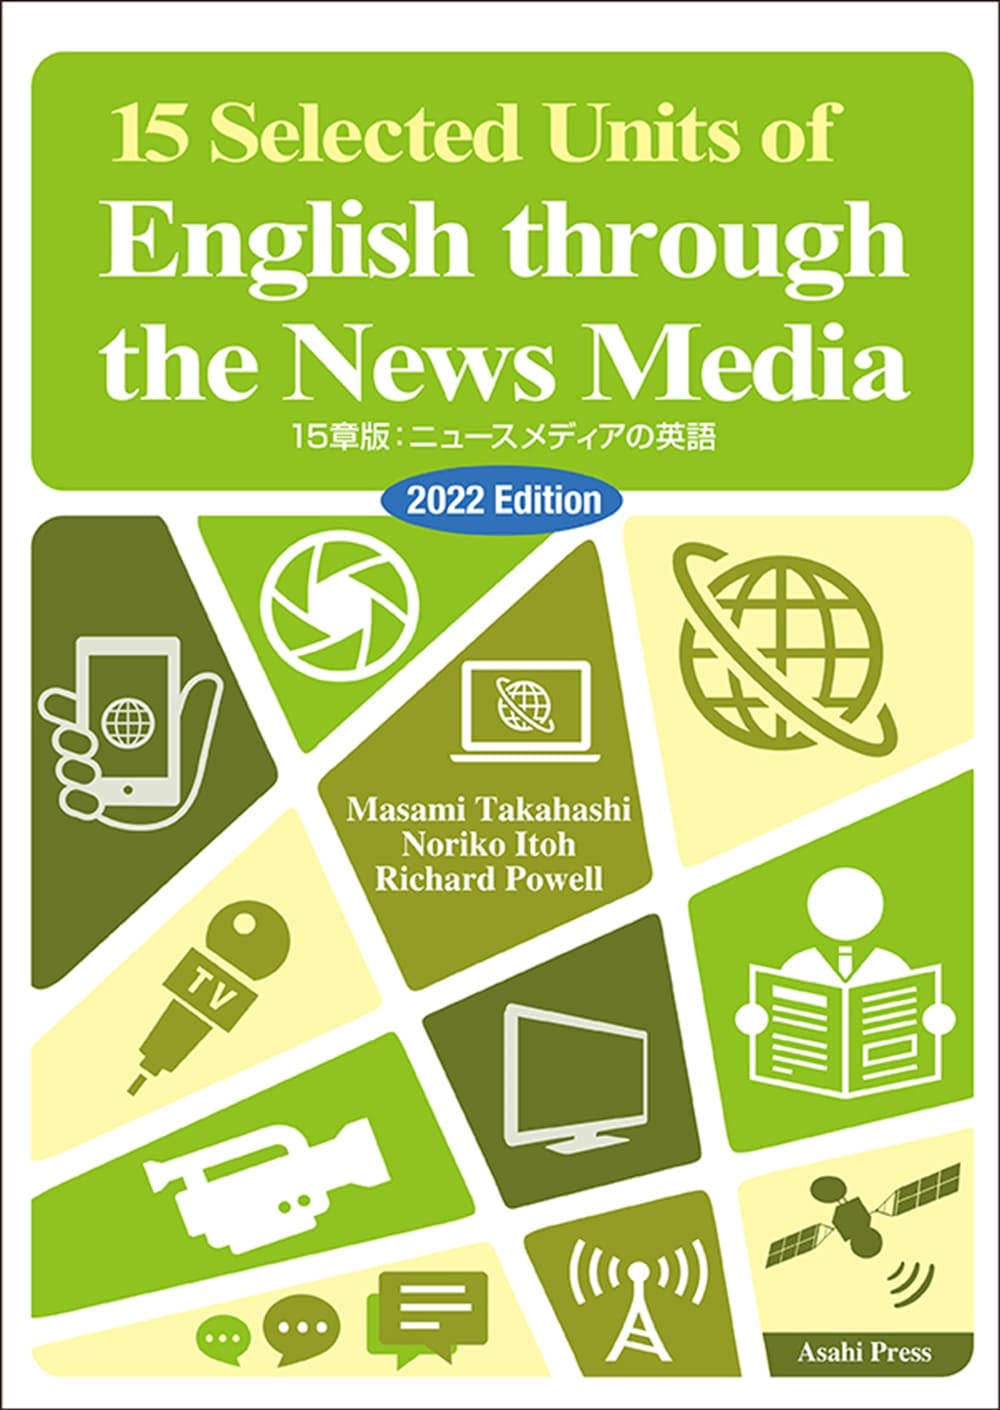 時事英語 Br 15章版 ニュースメディアの英語 演習と解説22年度版 教科書 英語 朝日出版社